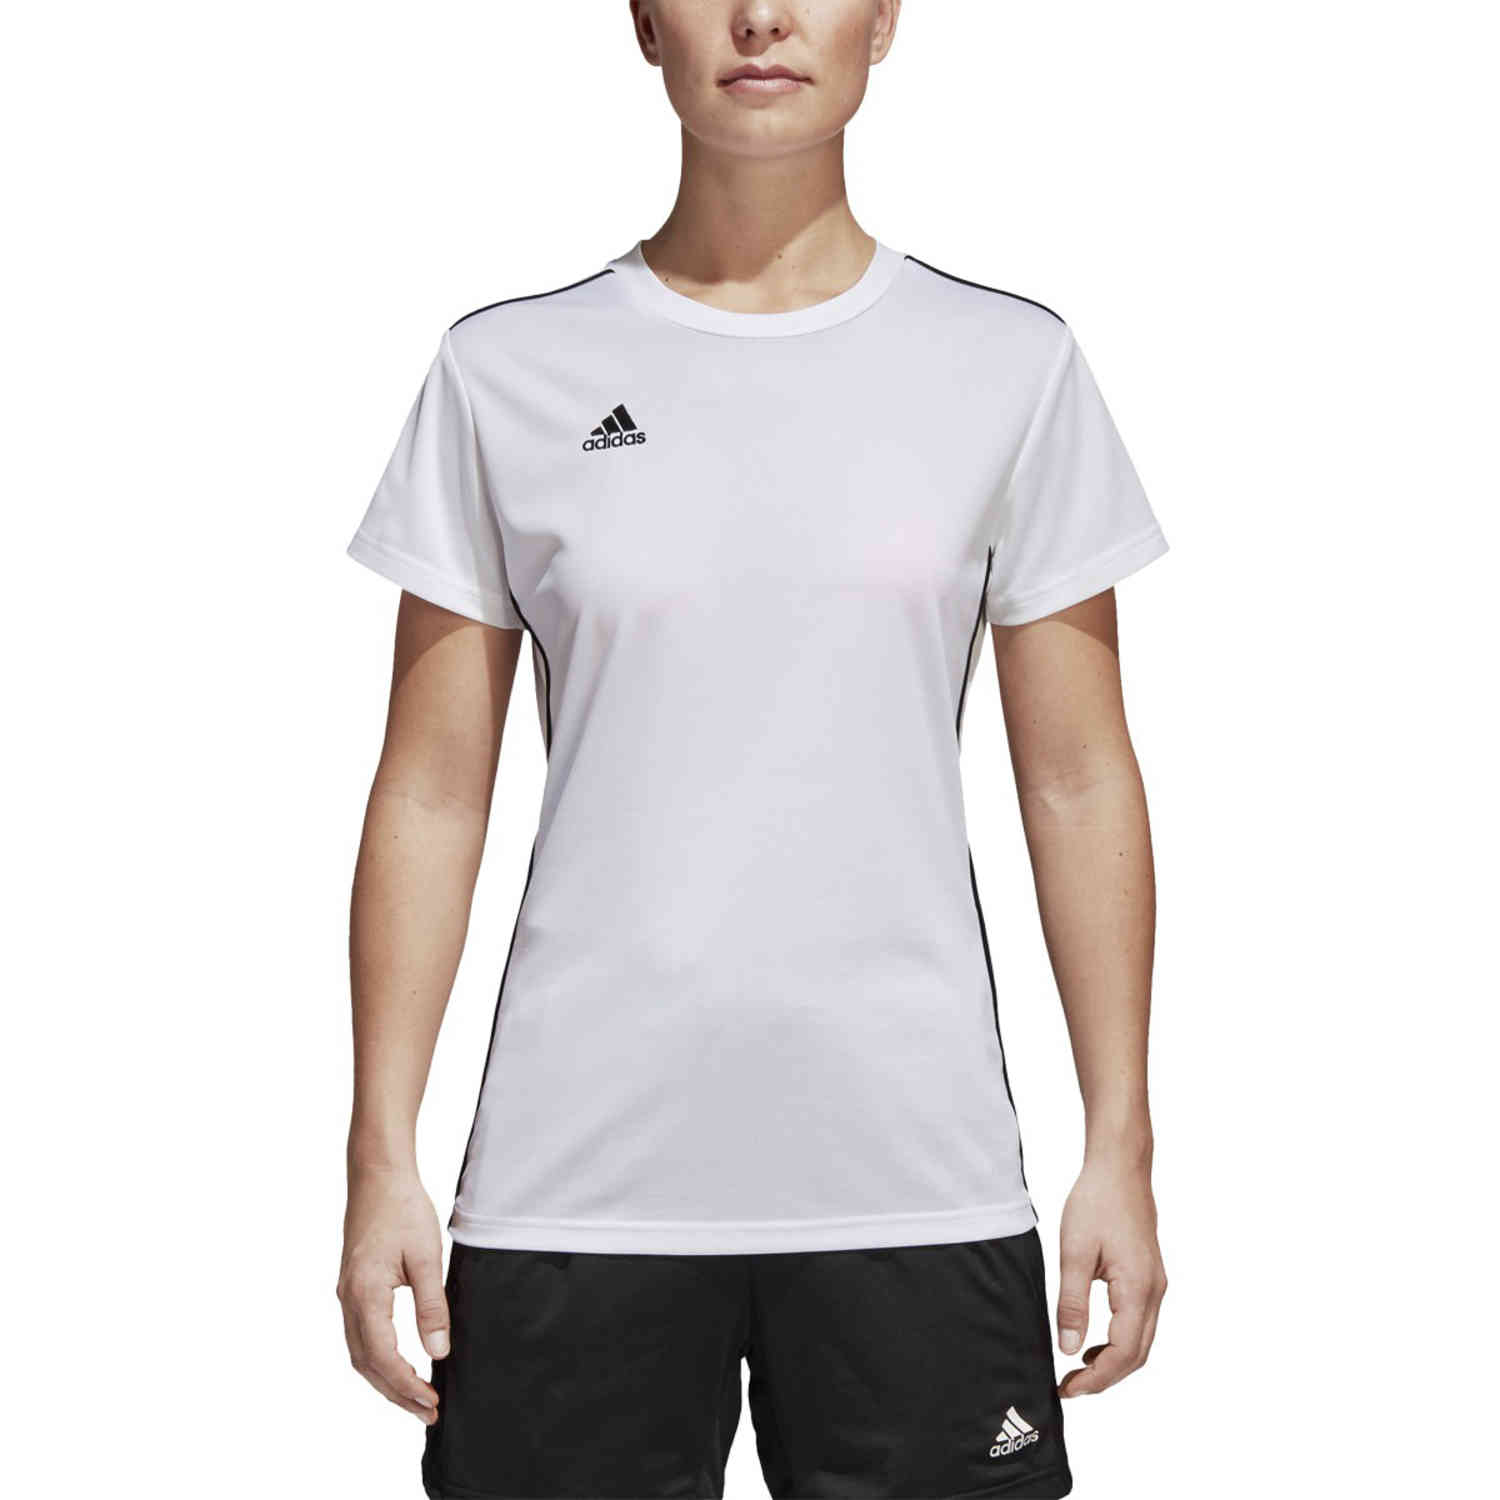 Womens adidas Core 18 Training Jersey - White/Black - SoccerPro